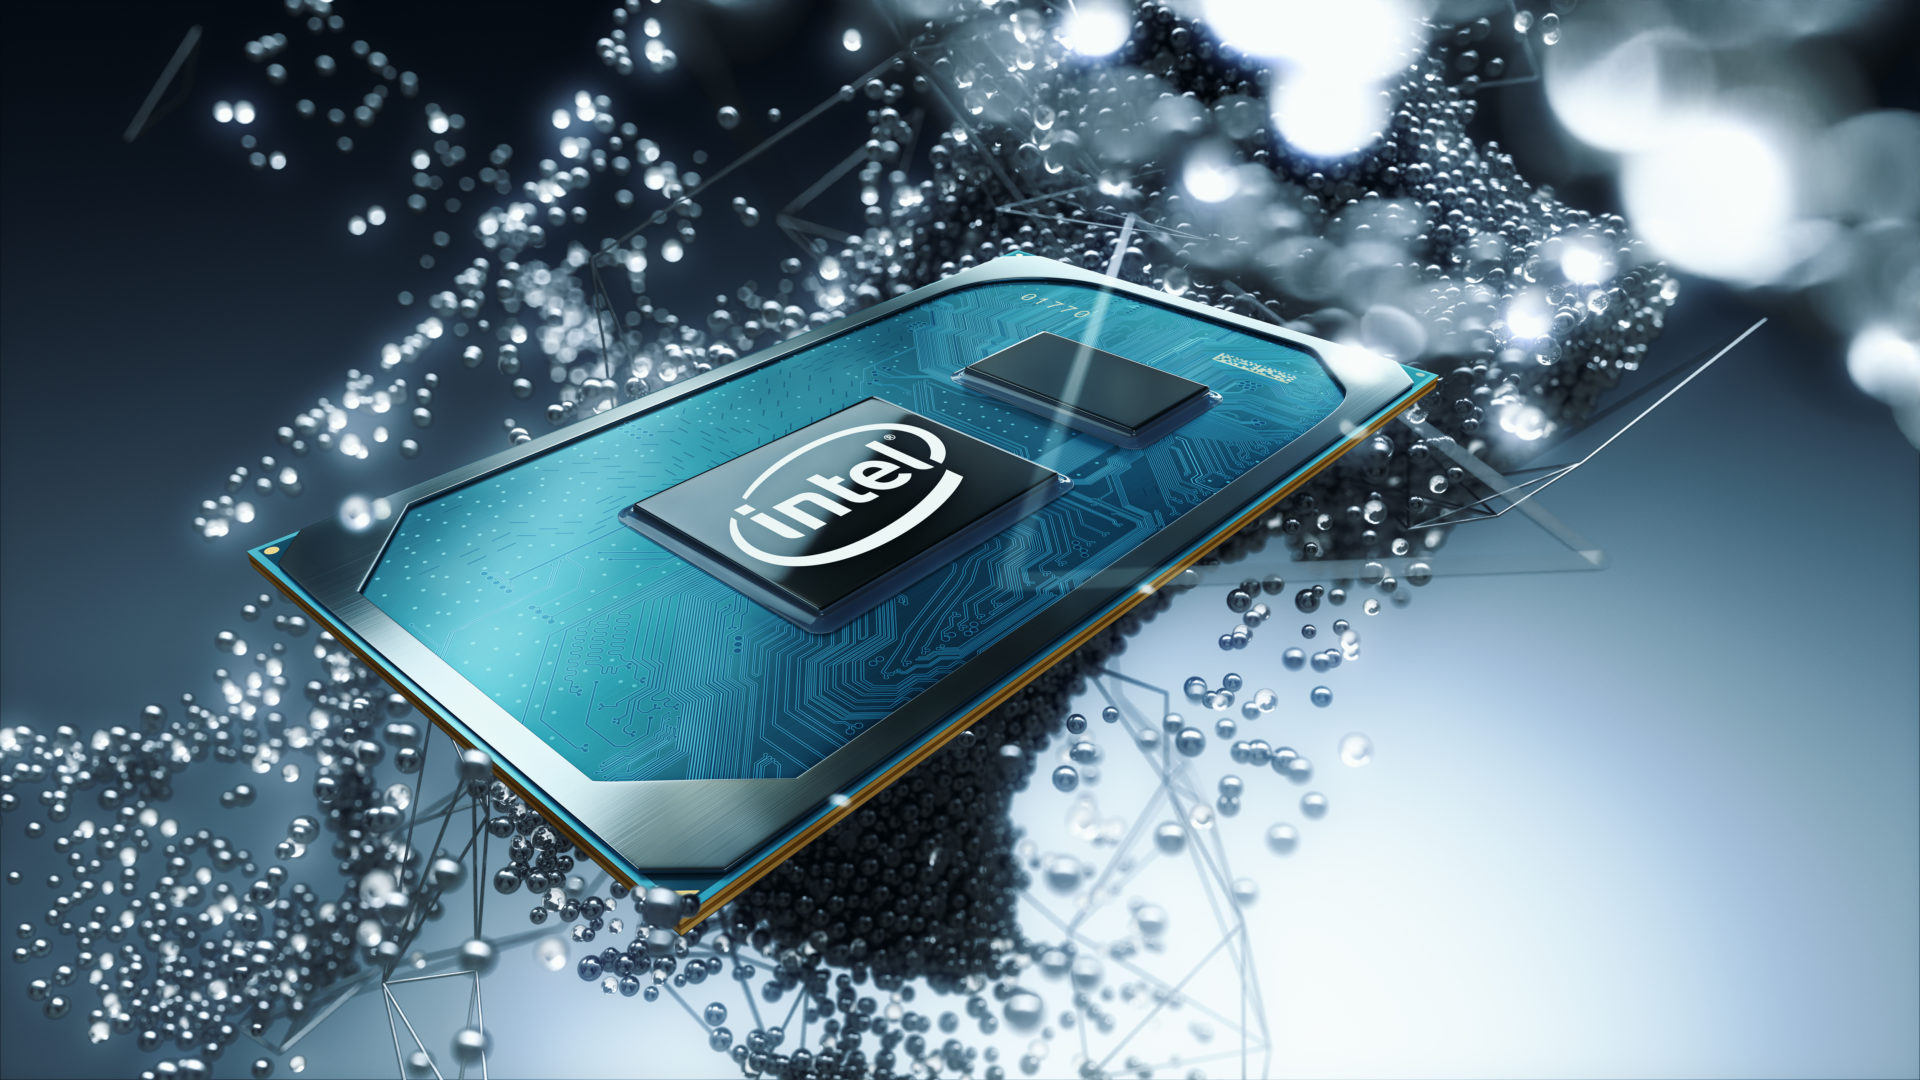 ส่องของใหม่จาก Intel มาดูกันว่าชิปใหม่ระดับ 10 nm+ ในยุคที่ 10 นั้นเป็นยังไงบ้าง!